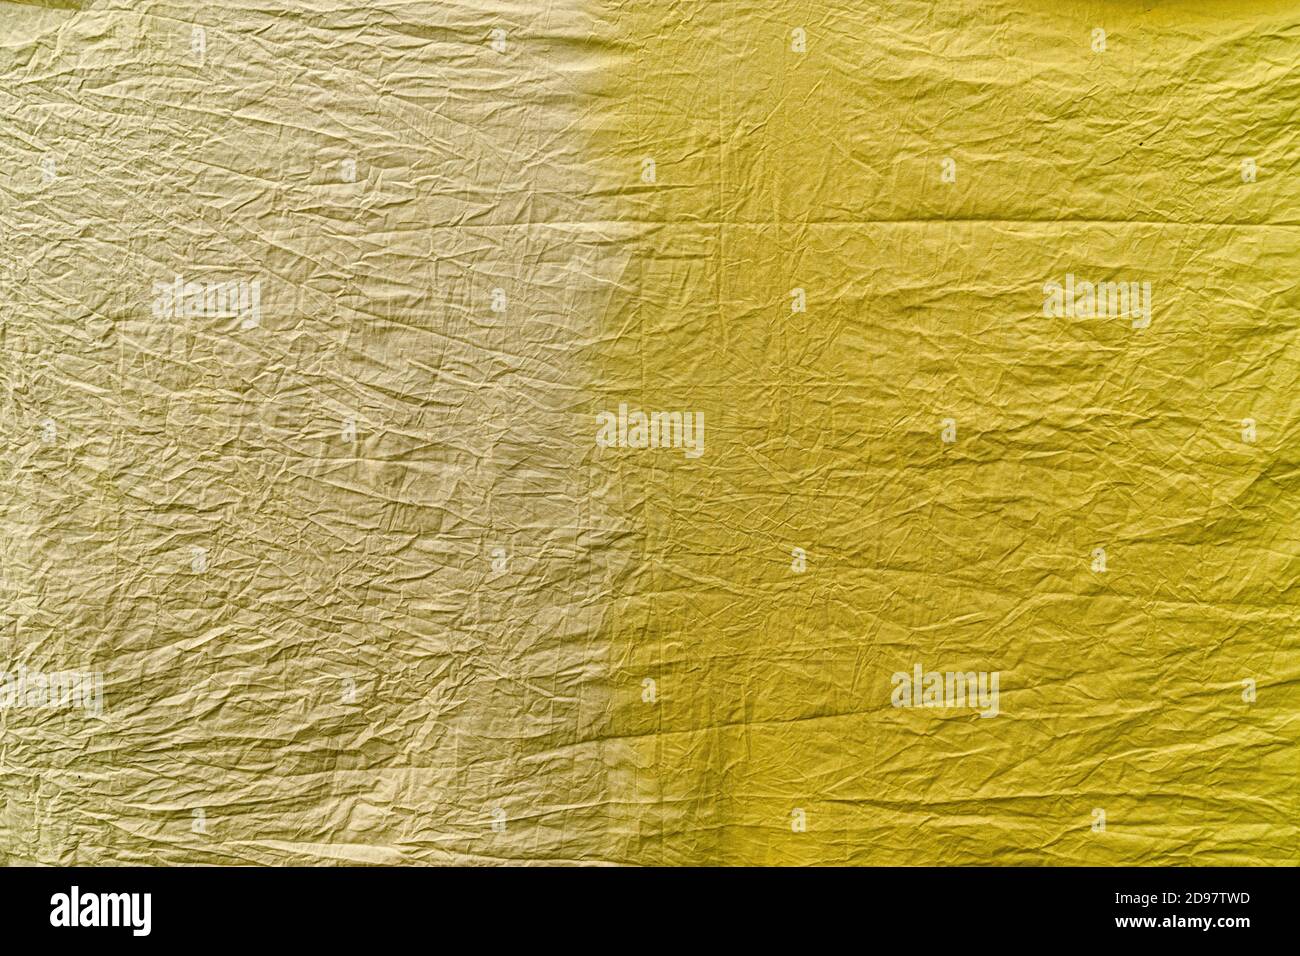 Un pezzo di tessuto di cotone sminuzzato in due tonalità gialle, tinto con diversi coloranti vegetali. Una parte del materiale: Giallo chiaro, l'altra più scura Foto Stock